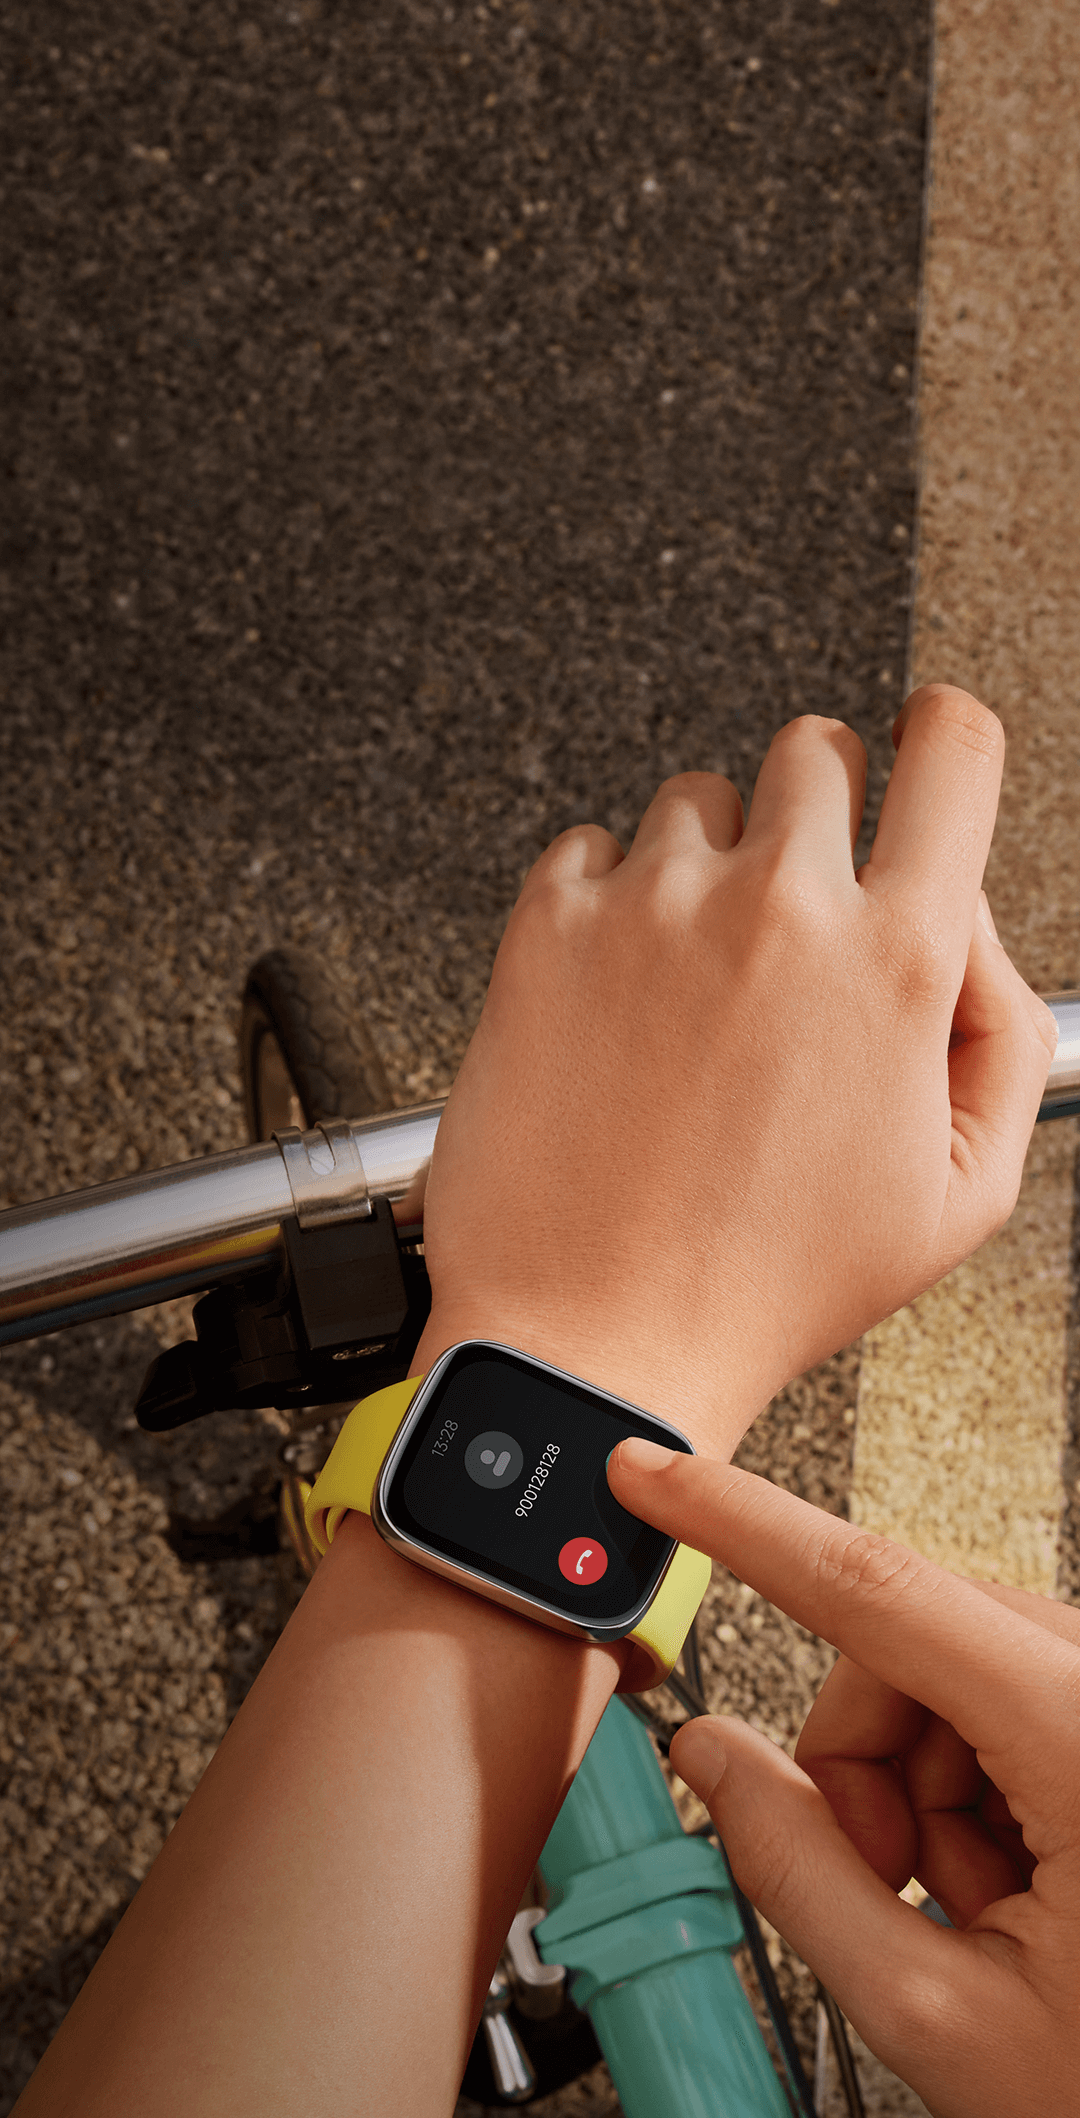 redmi-watch-3-active - Xiaomi España